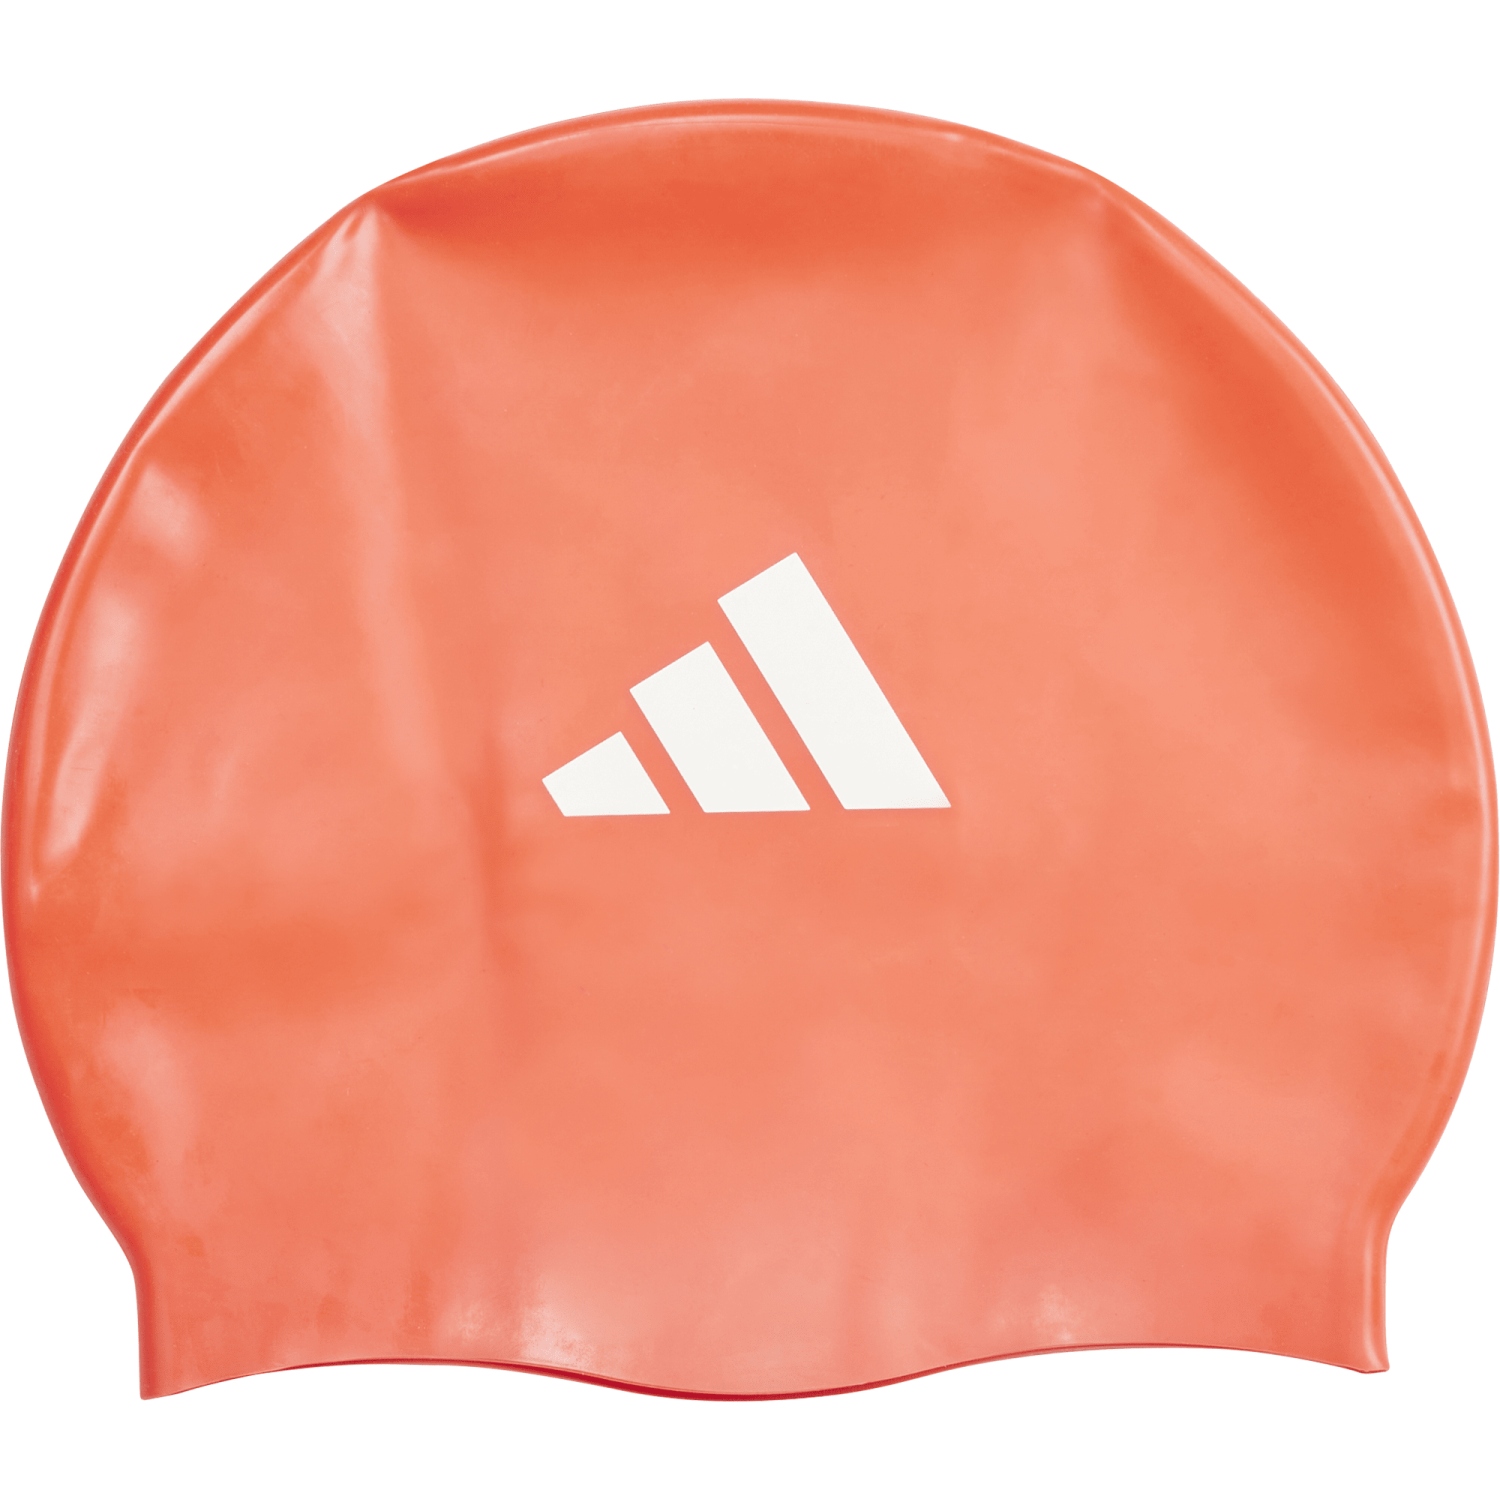 Produktbild von adidas 3S Badekappe Kinder - bright red/white IM1043